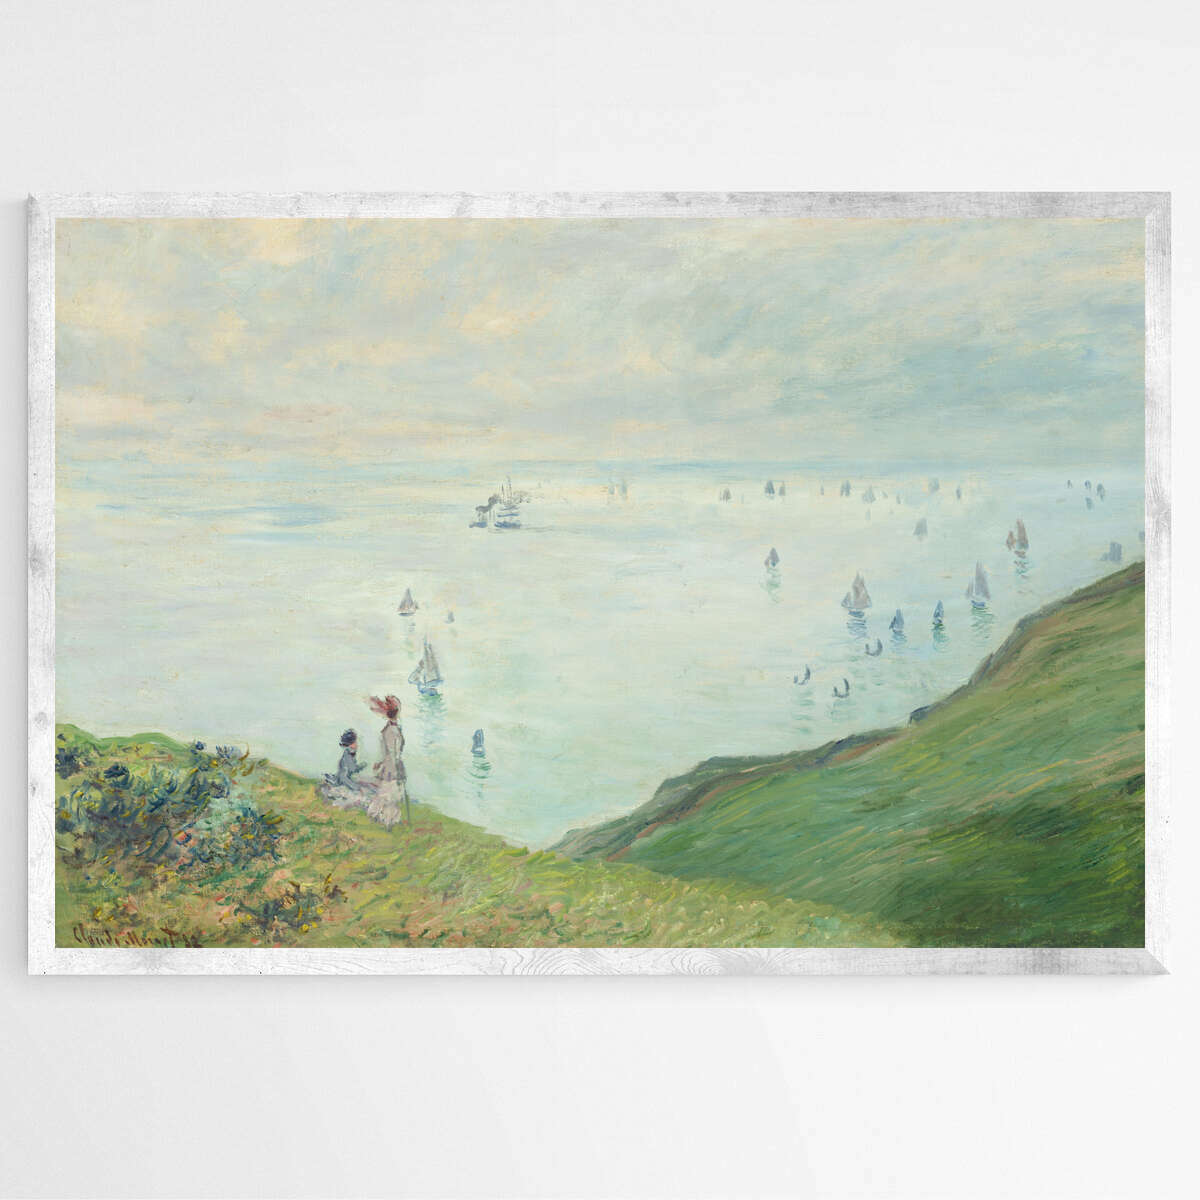 Cliffs at Pourville by Claude Monet | Claude Monet Wall Art Prints - The Canvas Hive